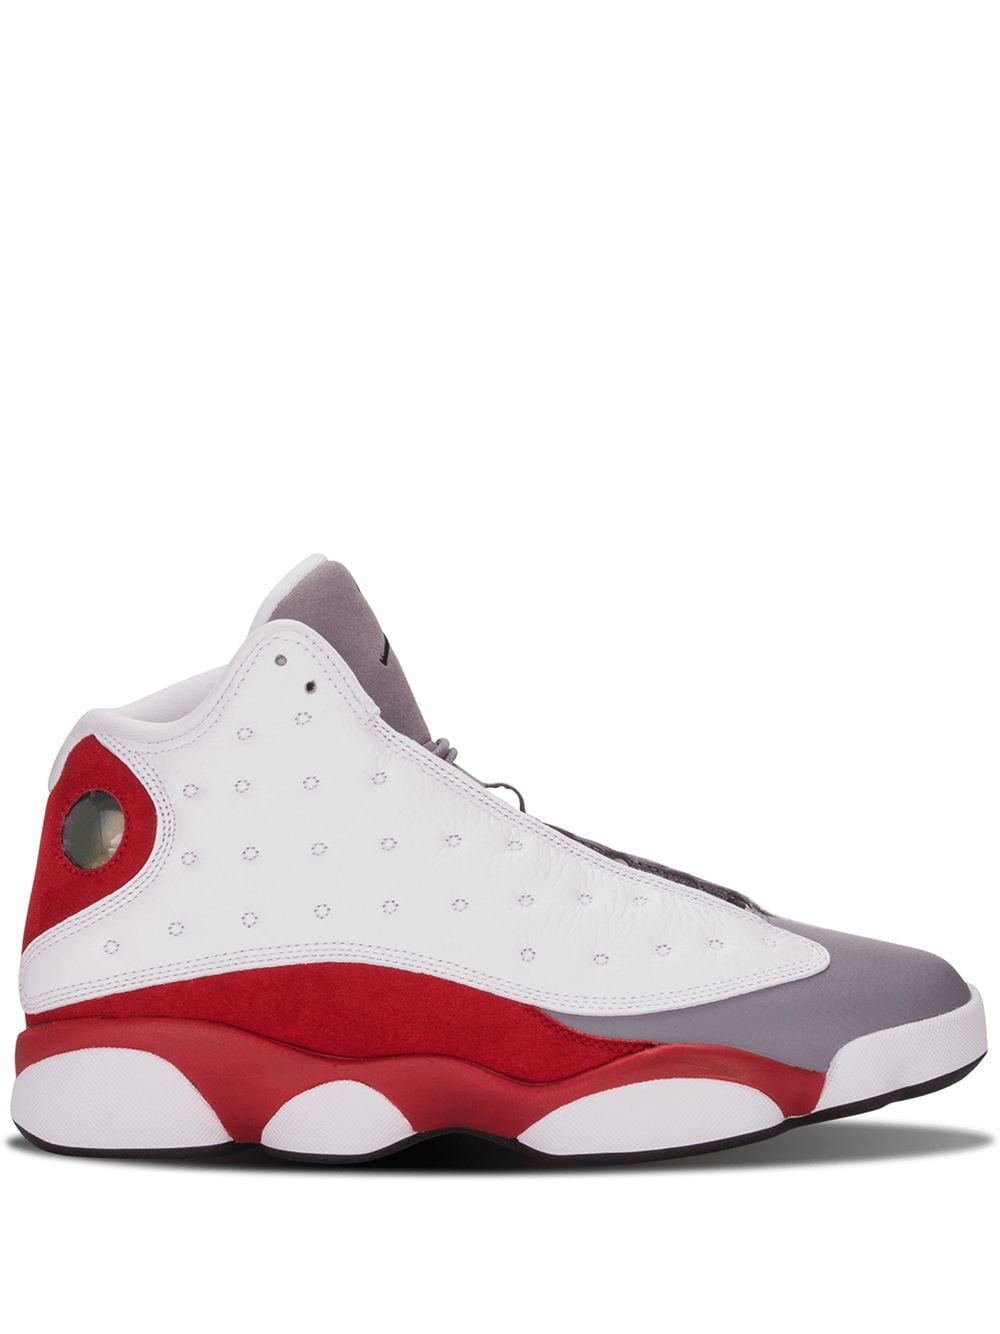 Jordan Air Jordan 13 Retro "Grey Toe" sneakers - White